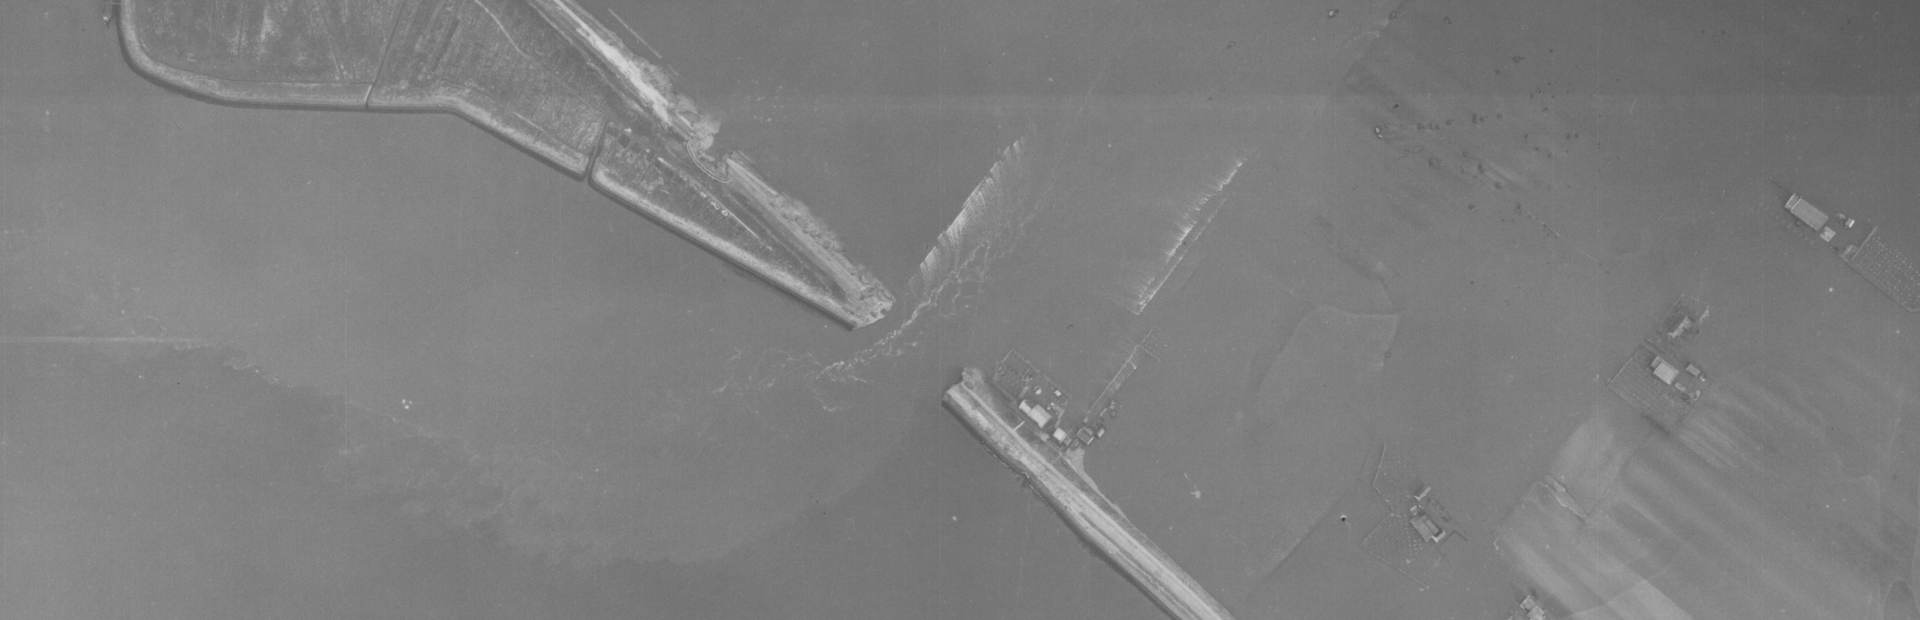 Luchtfoto uit 1953 waarin twee dijkdoorbraken zichtbaar zijn. De onderste is veranderd in een stroomgat. De bovenste ligt achter buitendijkse natuur en is niet diep uitgesleten.